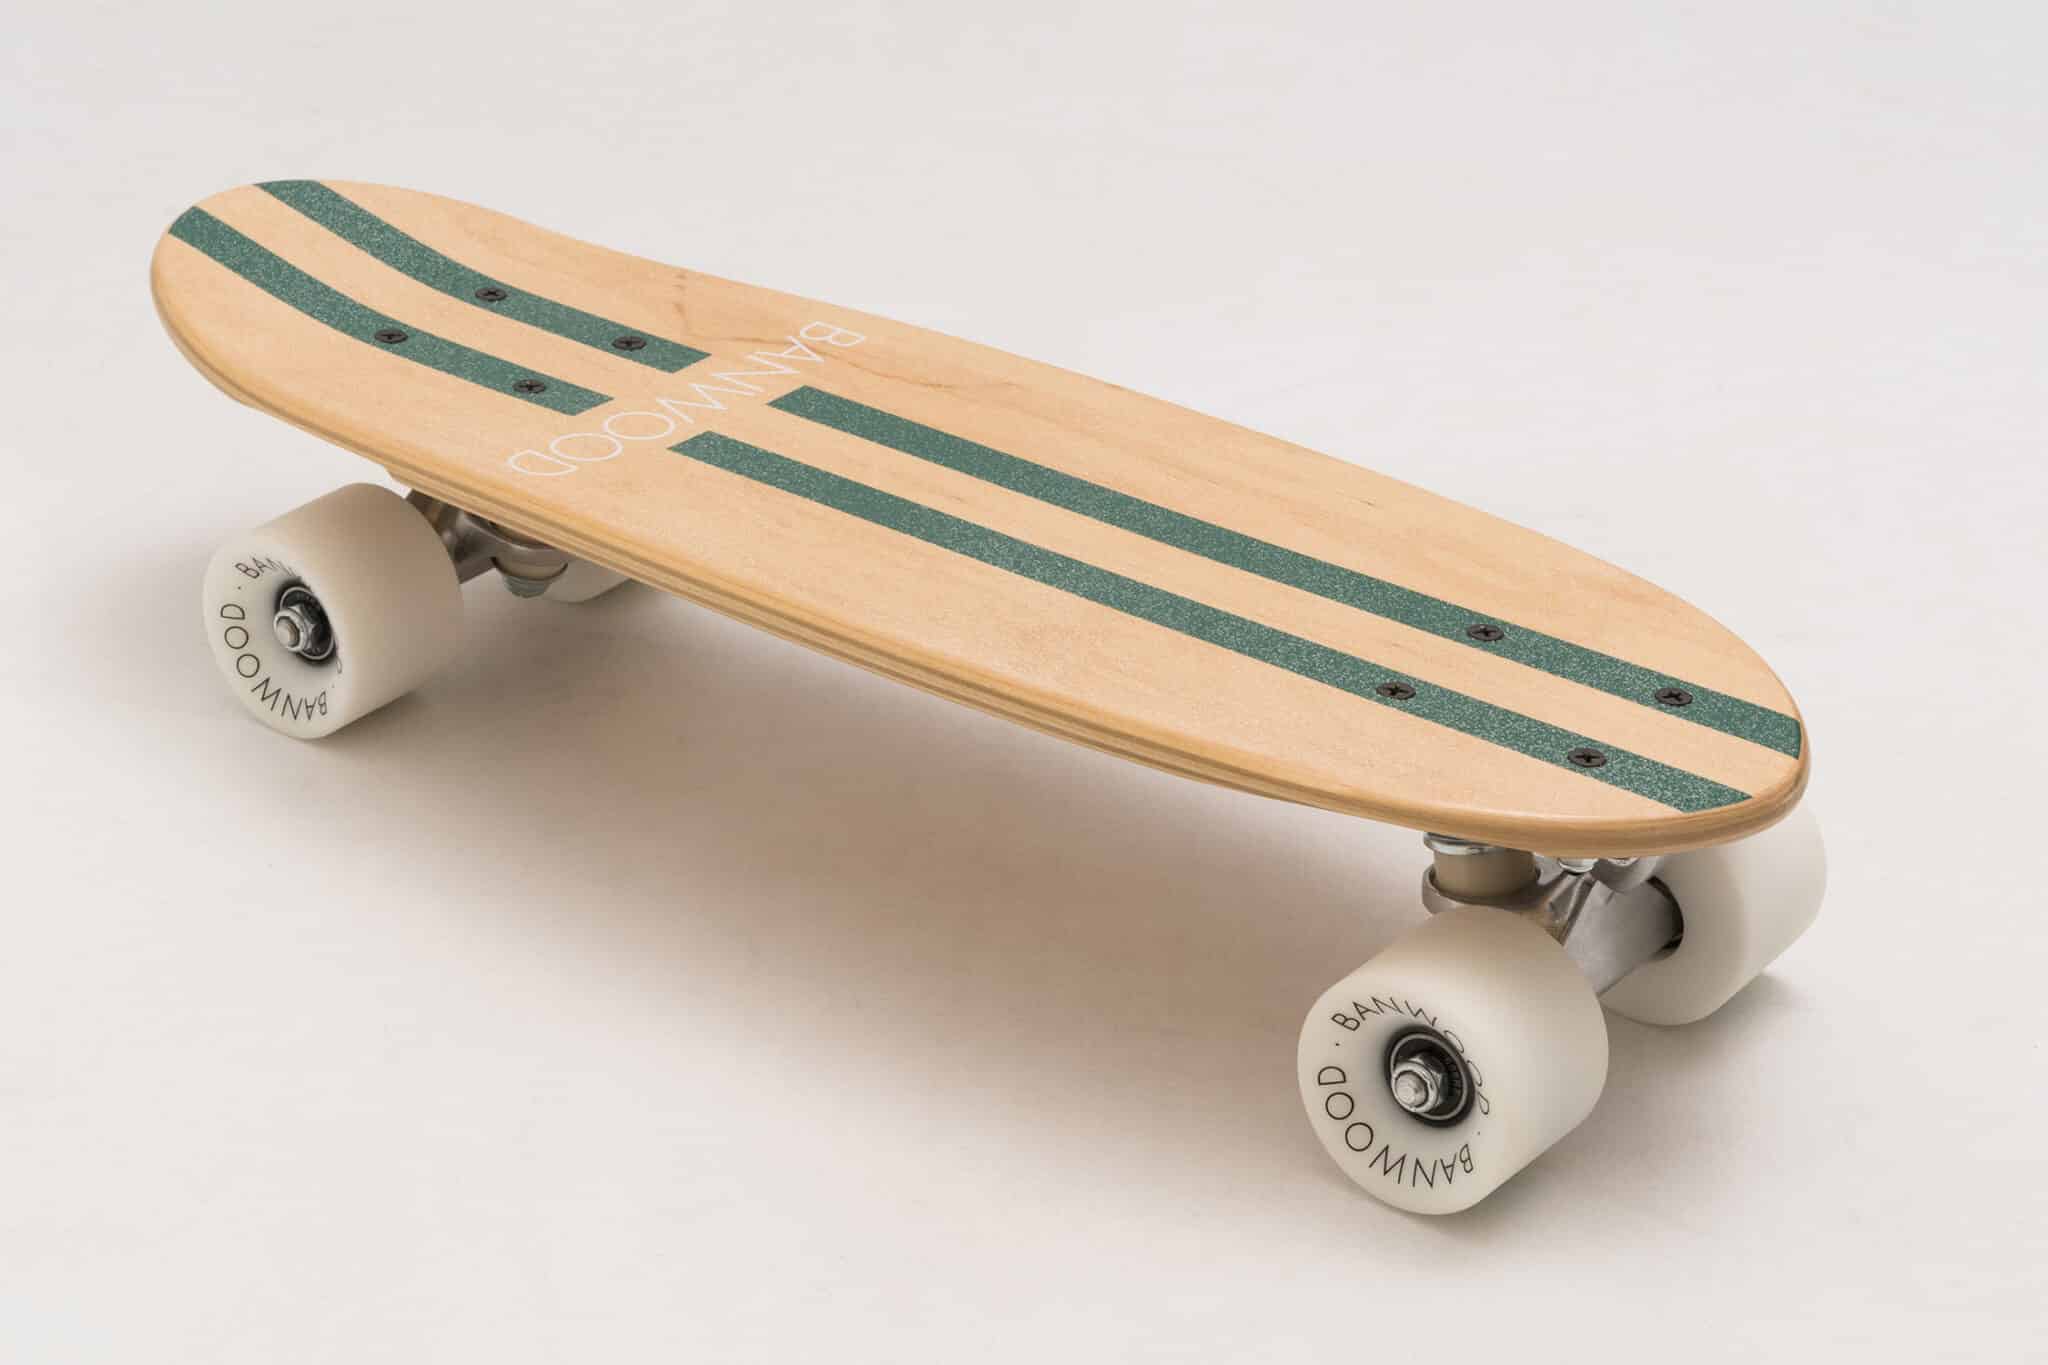 Skateboard Green